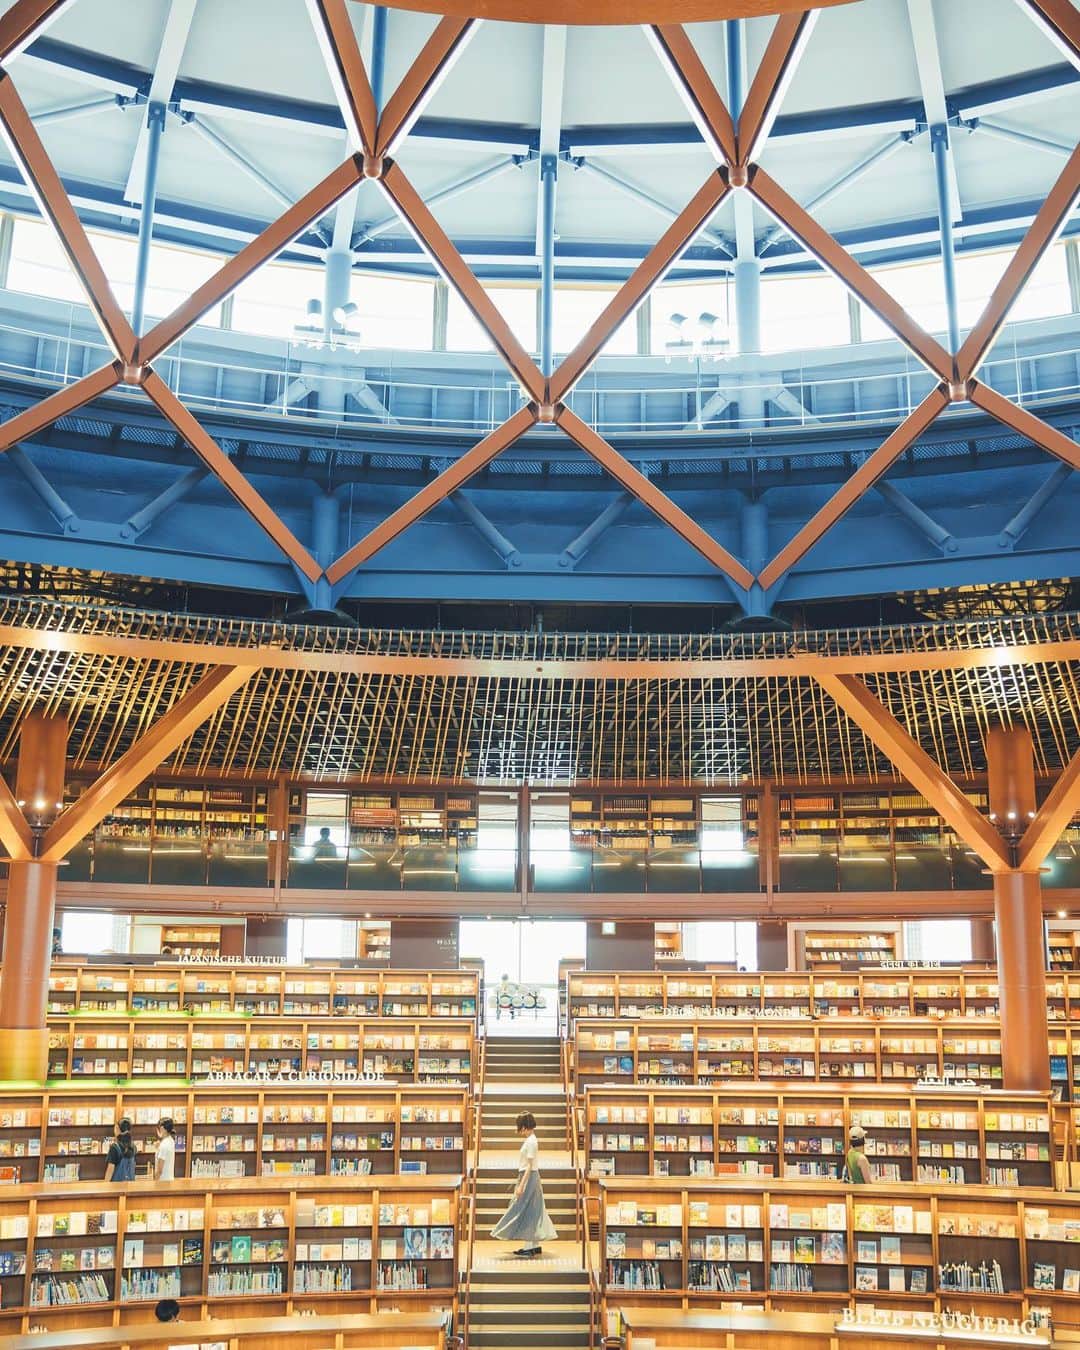 Sherryのインスタグラム：「ㅤㅤㅤㅤㅤㅤㅤㅤㅤㅤㅤㅤㅤ 金沢旅 | ᴛʀᴀvᴇʟ ᴛᴏ ᴋᴀɴᴀᴢᴀᴡᴀ ㅤㅤㅤㅤㅤㅤㅤㅤㅤㅤㅤㅤㅤ ㅤㅤㅤㅤㅤㅤㅤㅤㅤㅤㅤㅤ金沢投稿、もう少しお付き合いください✨  📍 #石川県立図書館  なんだかハリーポッターの世界みたいなものすごく美しい図書館に感激!!私たちは観光で行ったので建物の美しさやスケールの大きさに感動していたけど、いろんなタイプの個室や大机やブランコの席なんかもあって、勉強・読書・仕事と目的に合わせて使える夢見たいな図書館だった。近所にあったらいいのに…🥺 ㅤㅤㅤㅤㅤㅤㅤㅤㅤㅤㅤ ㅤㅤㅤㅤㅤㅤㅤㅤㅤㅤㅤㅤ 📍 #鈴木大拙館  谷口吉生さん設計の建物で、水鏡の庭をいろんな角度から撮るのにみんなで夢中になりました。 ㅤㅤㅤㅤㅤㅤㅤㅤㅤㅤㅤㅤㅤ  -------------------------------------------- 🗺️ #金沢旅行 #金沢観光 #金沢観光スポット  🏷️ #sherry_ishikawa #sherry_travelphoto  　#金沢市camell #camell #pr金沢市 #kanazawa  ------------------------------------------」